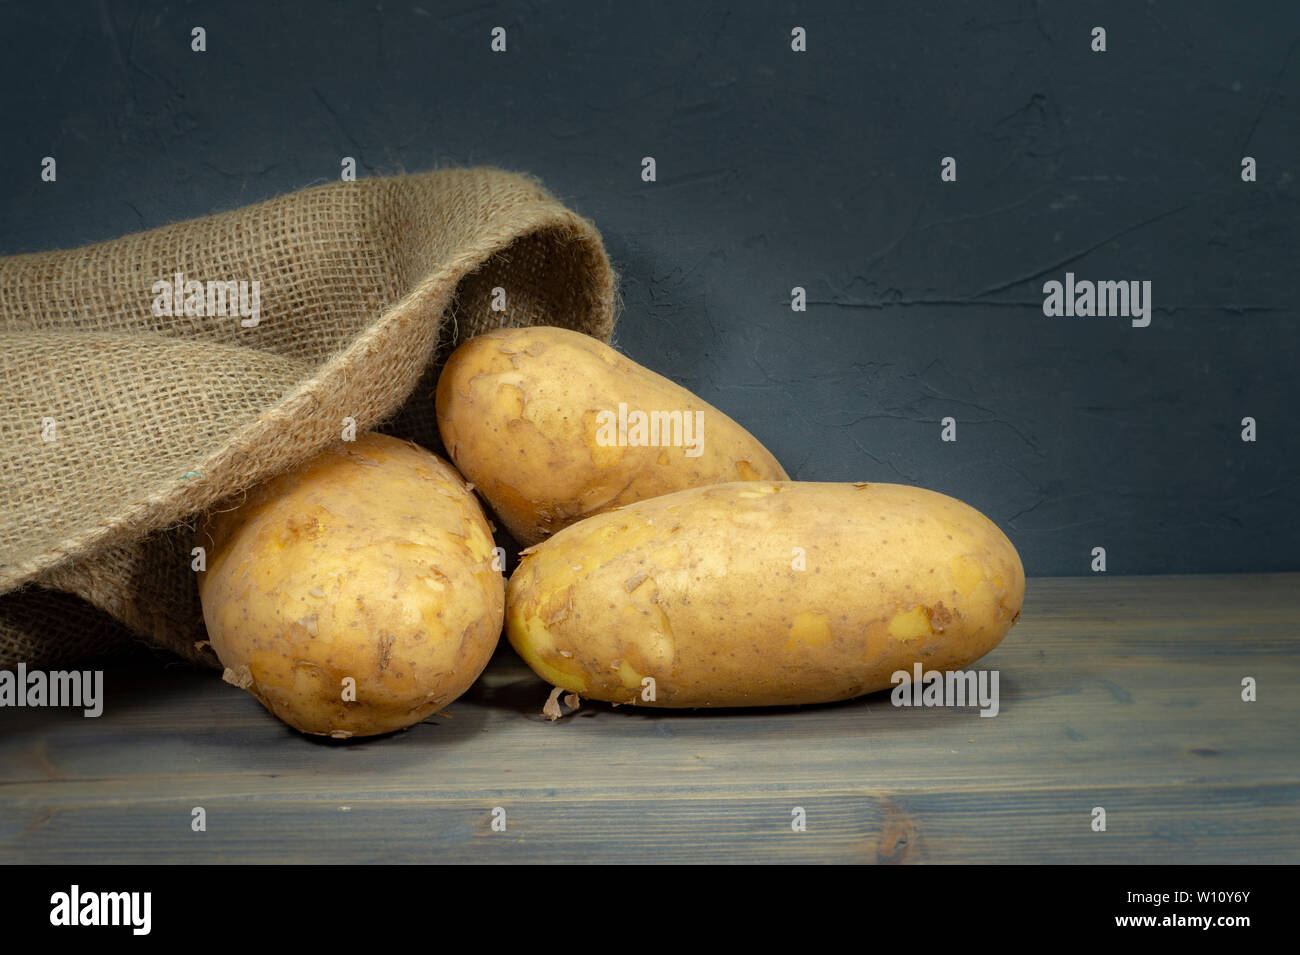 Matières, sans les laver, éplucher les pommes de terre, s'échappant de sac en toile de jute sur un vieux fond de bois rustique Banque D'Images